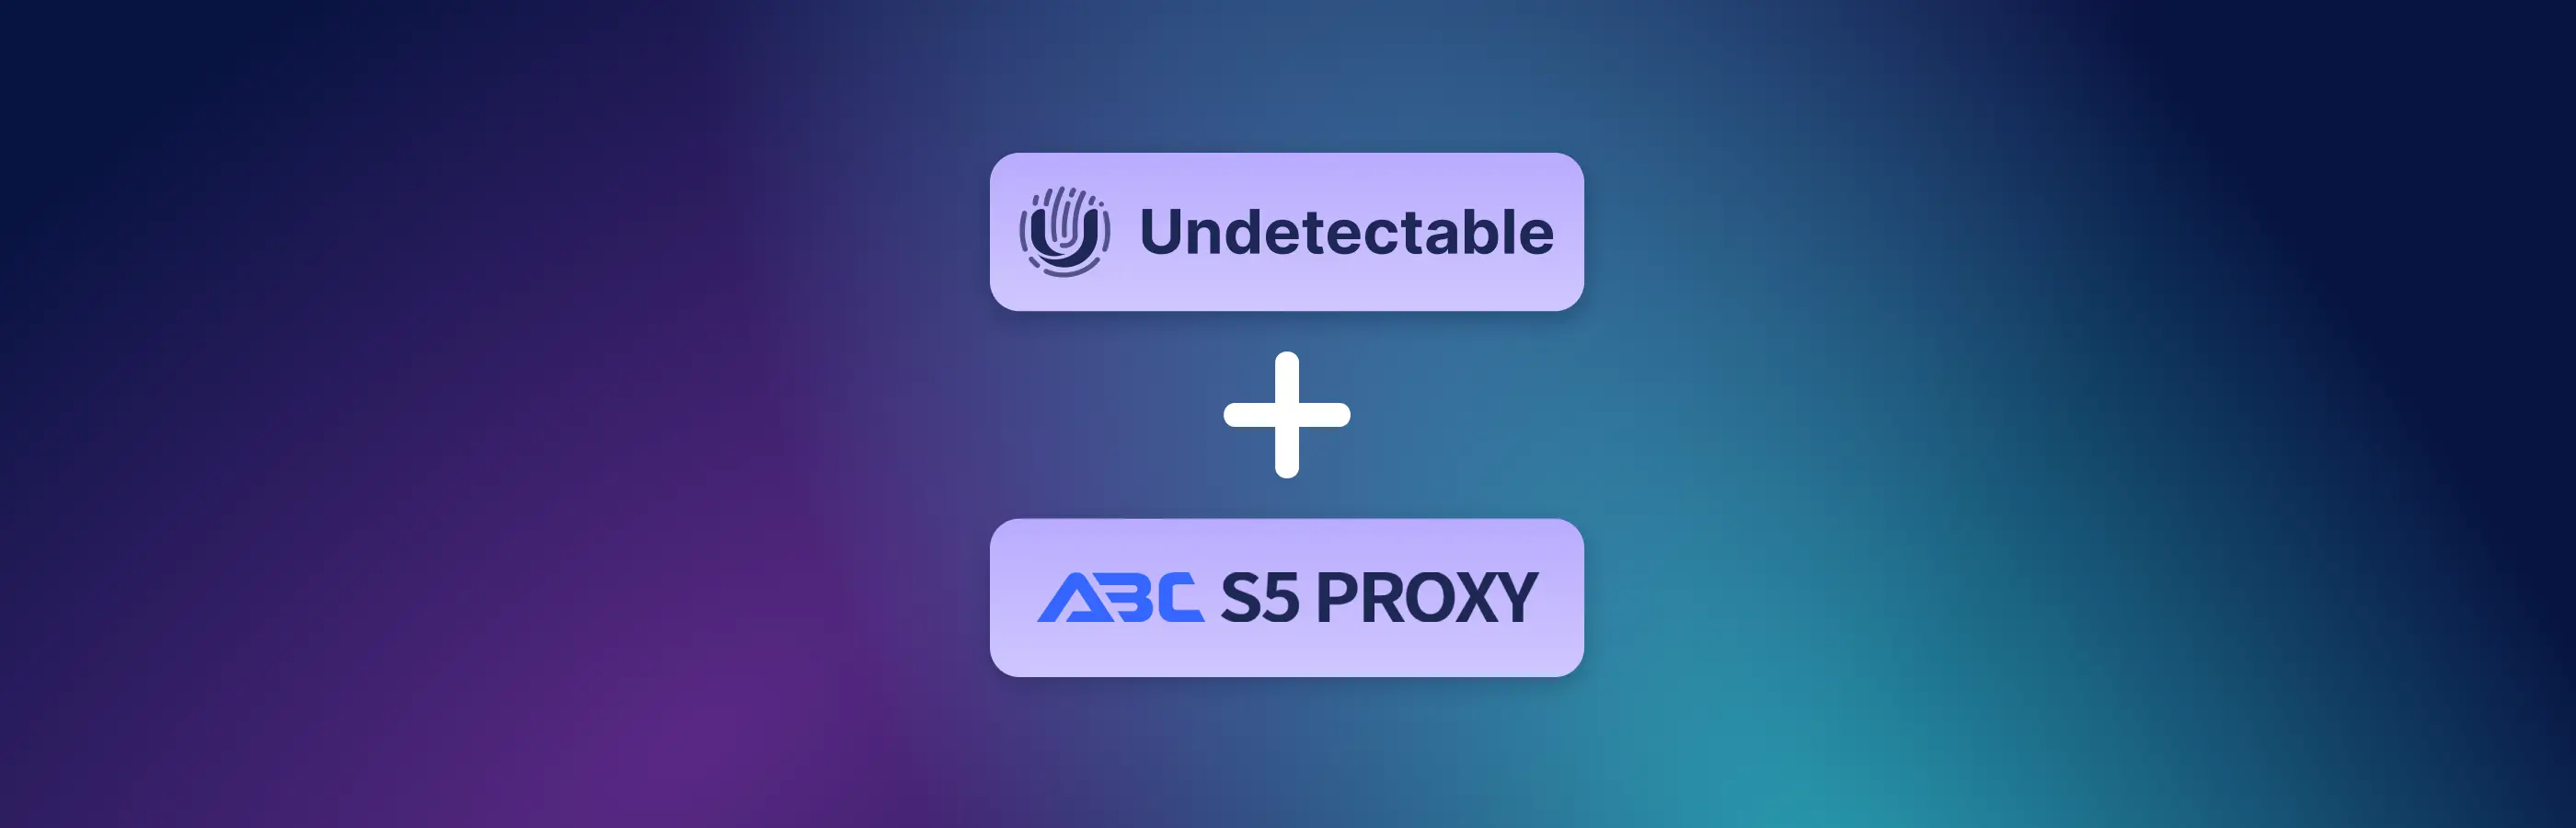 Instruções para conectar o ABCProxy ao Indetectável